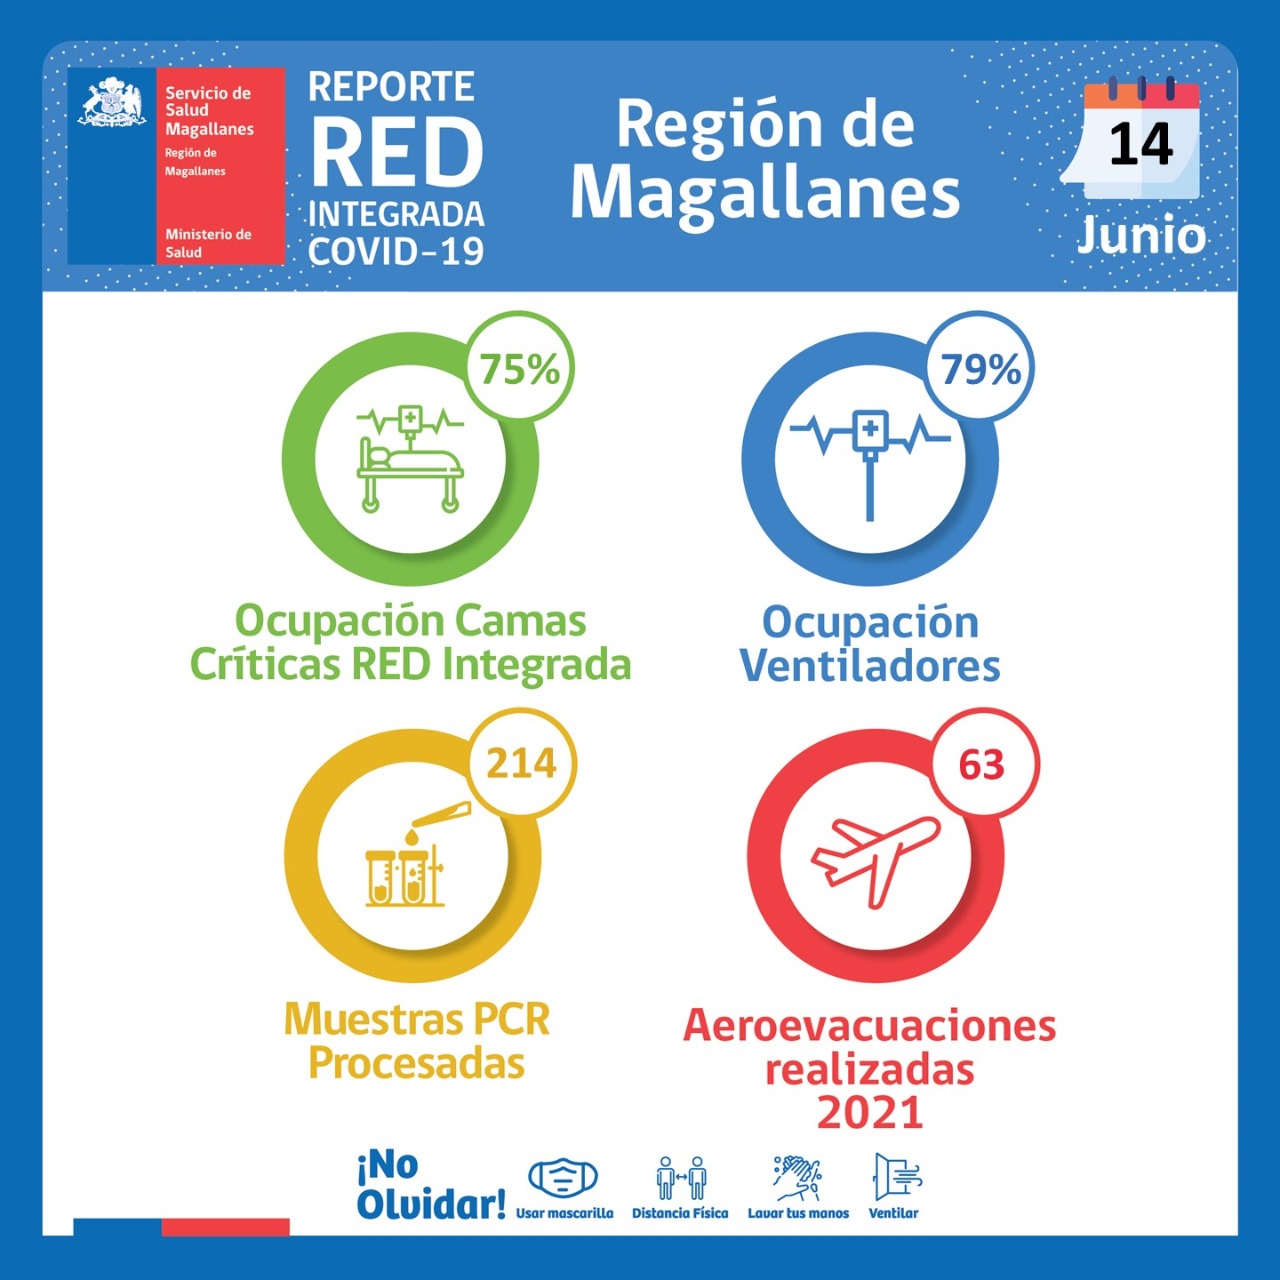 Estado de la red hospitalaria integrada covid19 en Magallanes, al 14 de junio